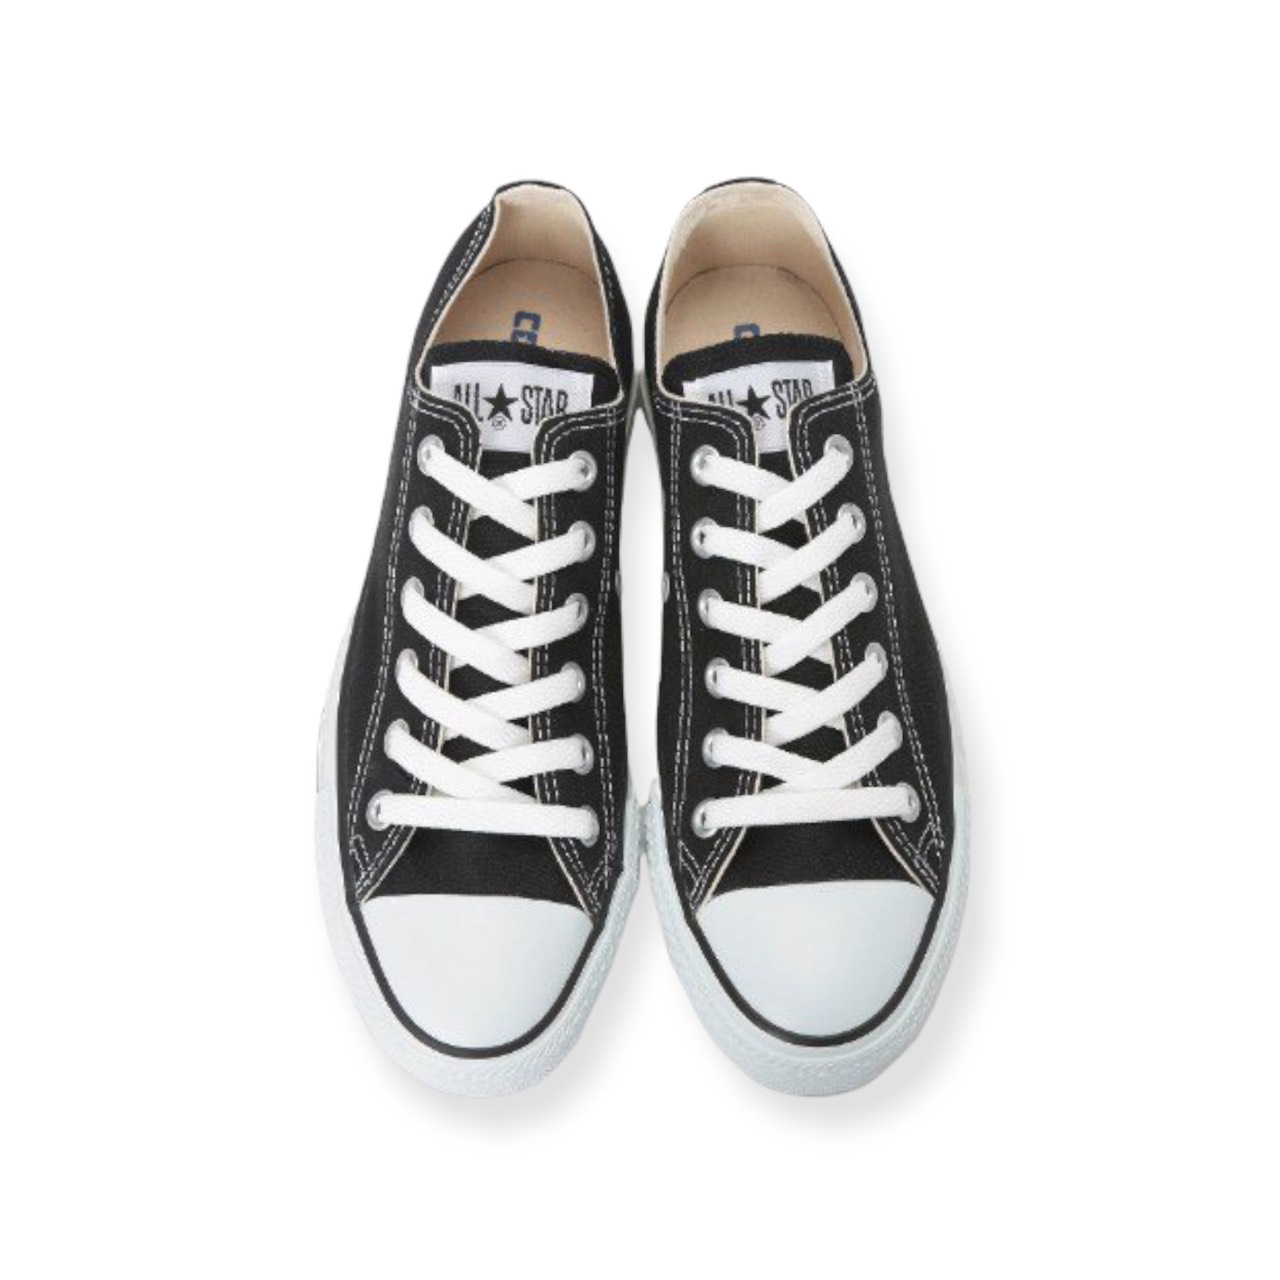 Giày Converse classic black white | giày converse cổ thấp đen trắng